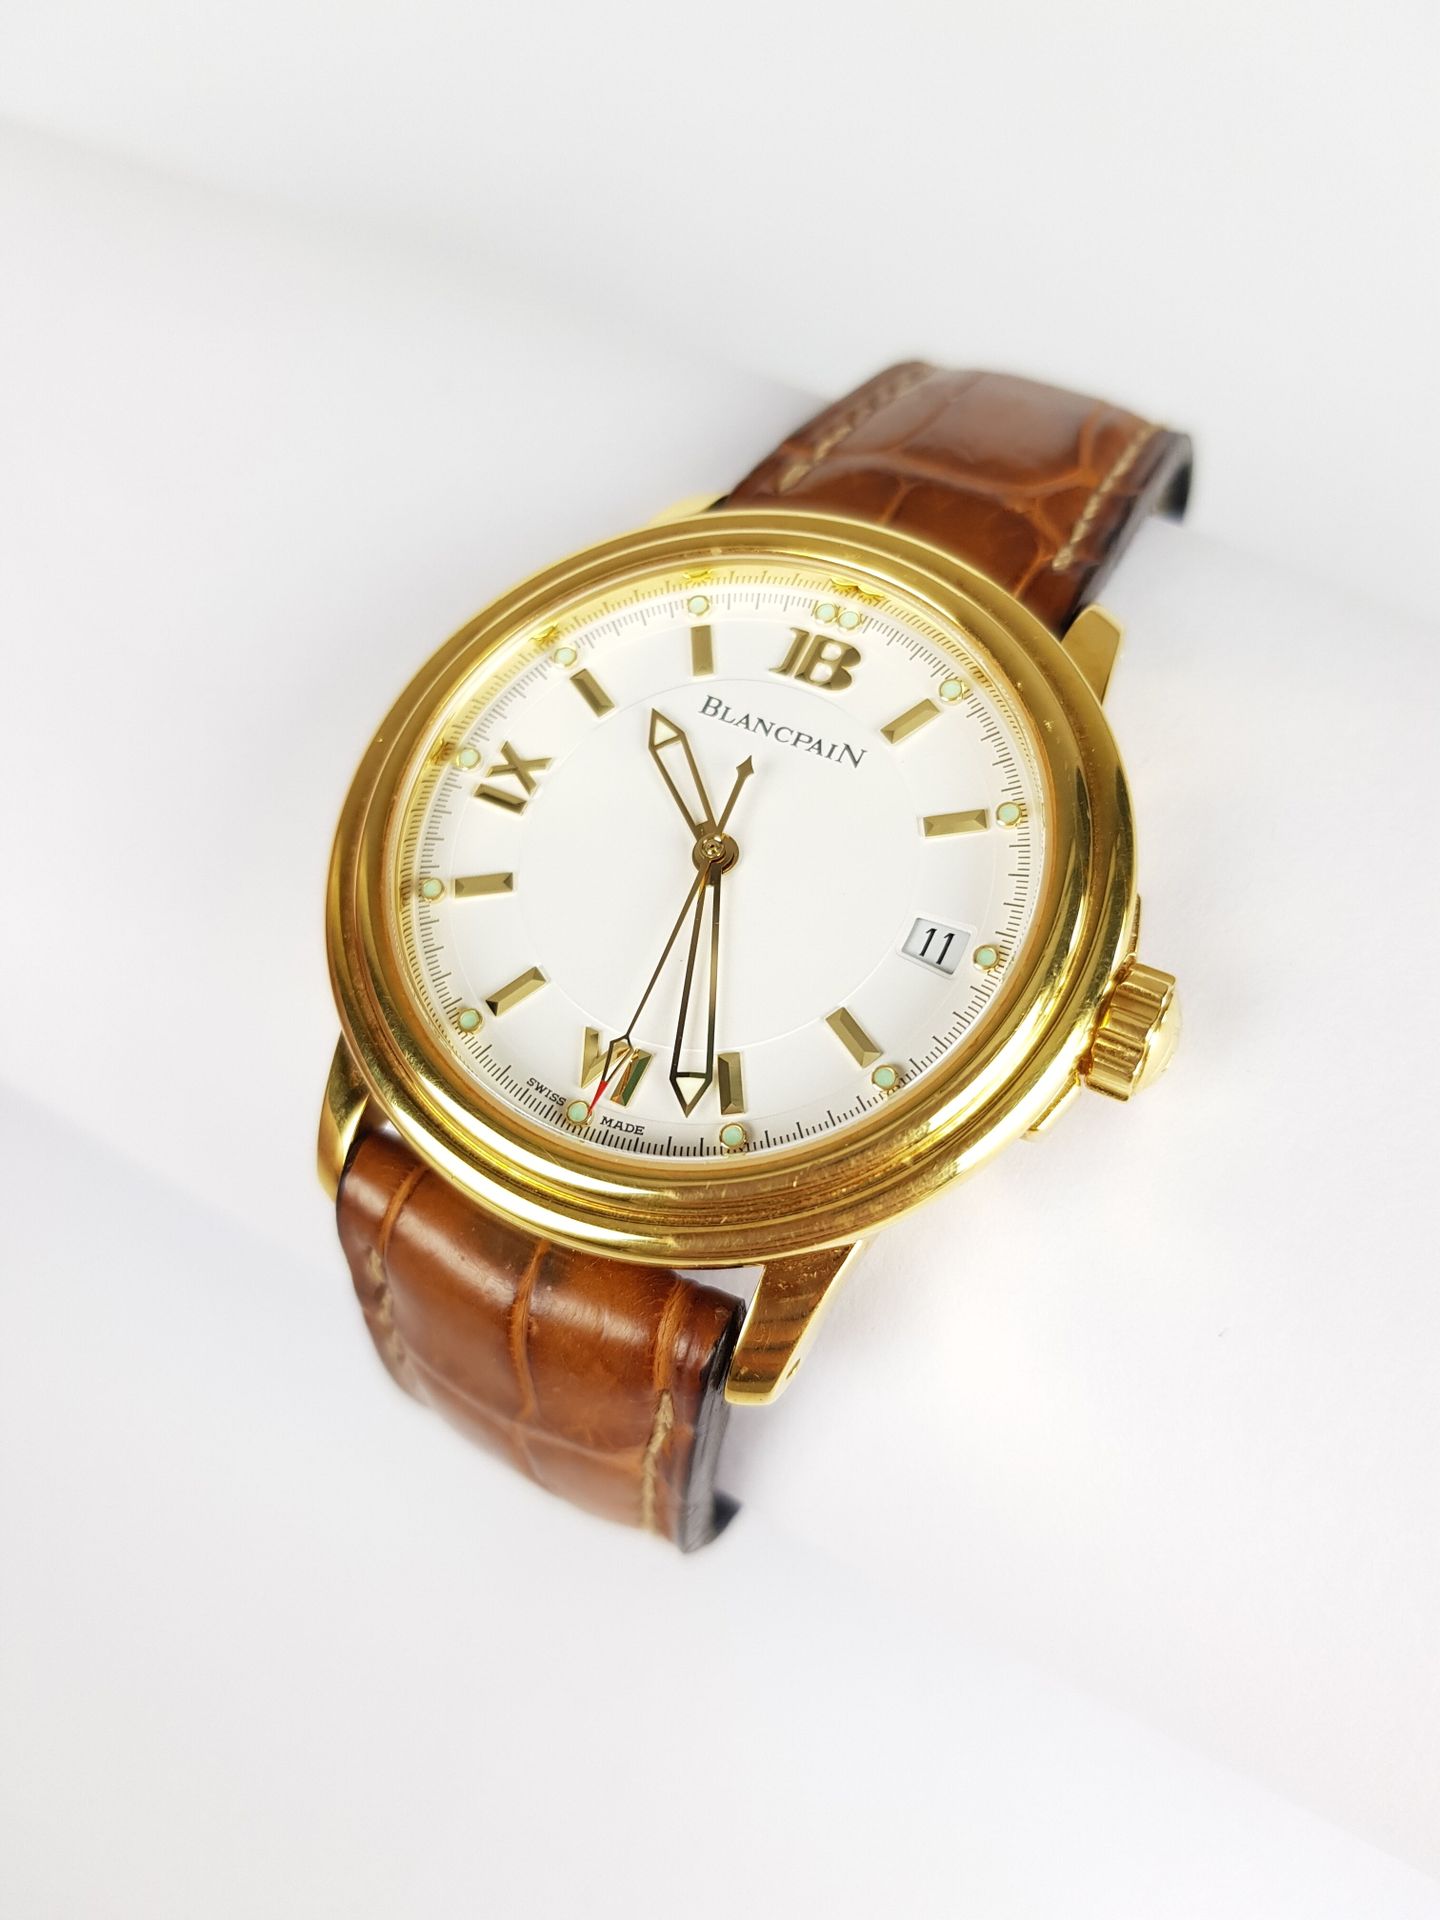 Null Zum Verkauf angeboten: 2.000 €.

BLANCPAIN

Uhr aus 750 Tausendstel Gelbgol&hellip;